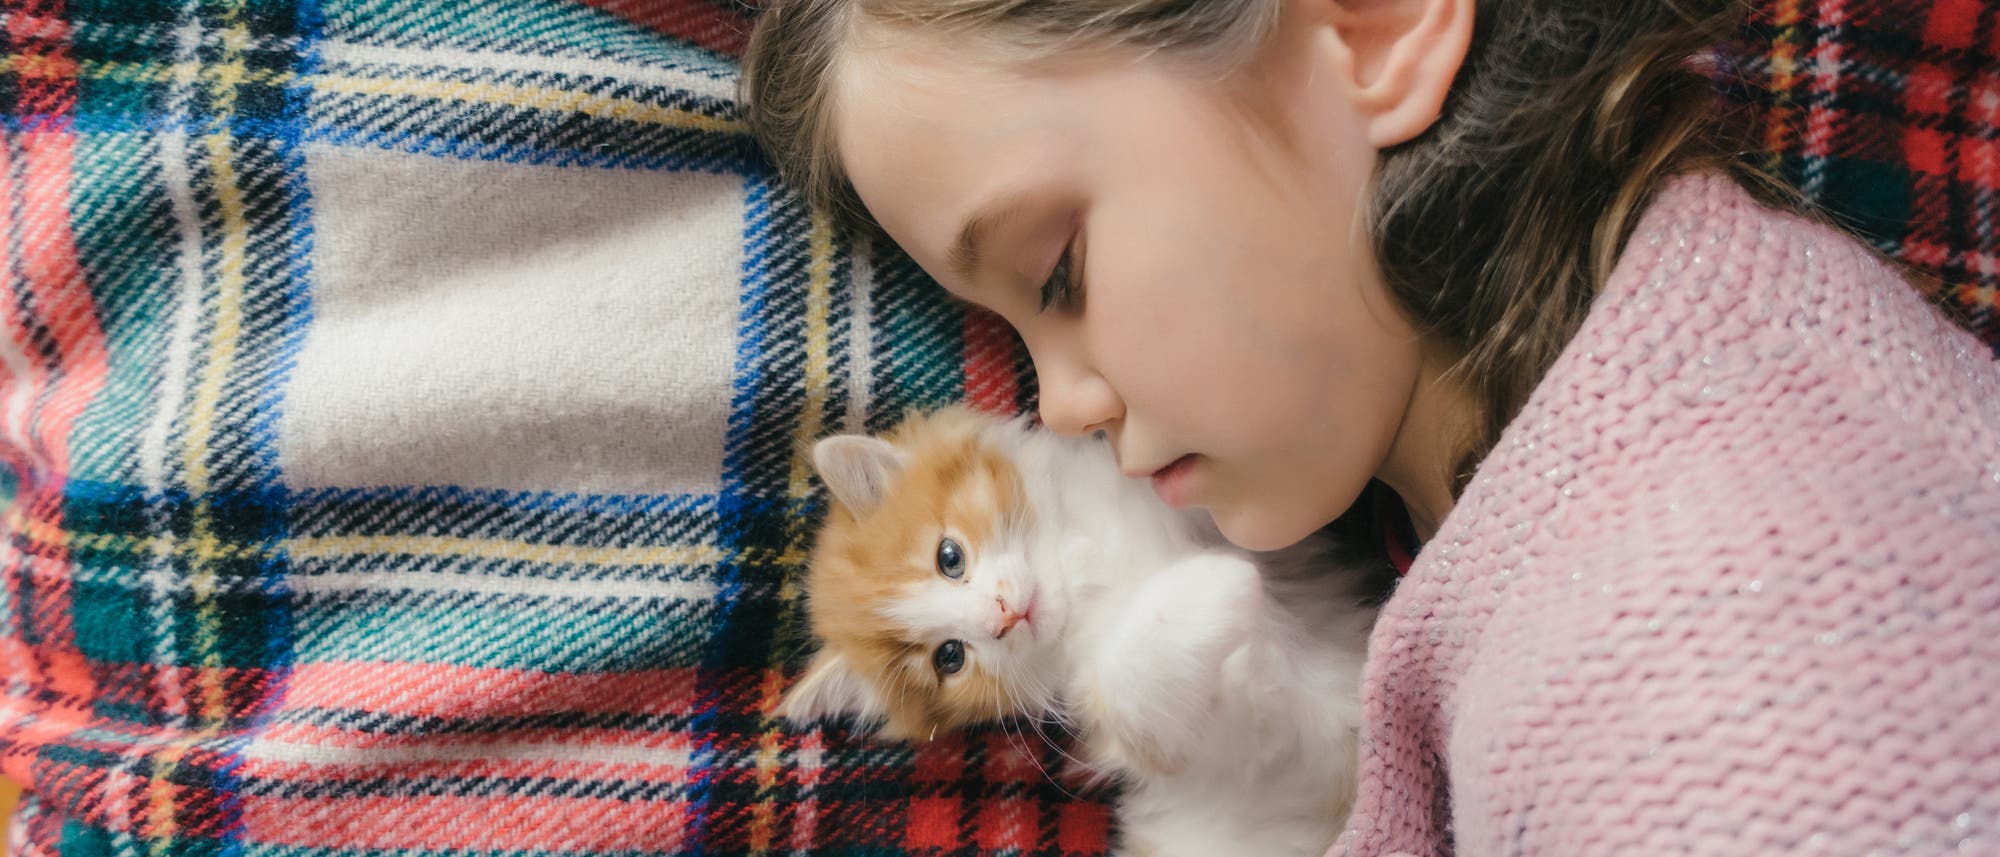 Mädchen mit jungem Kätzchen auf einer Decke